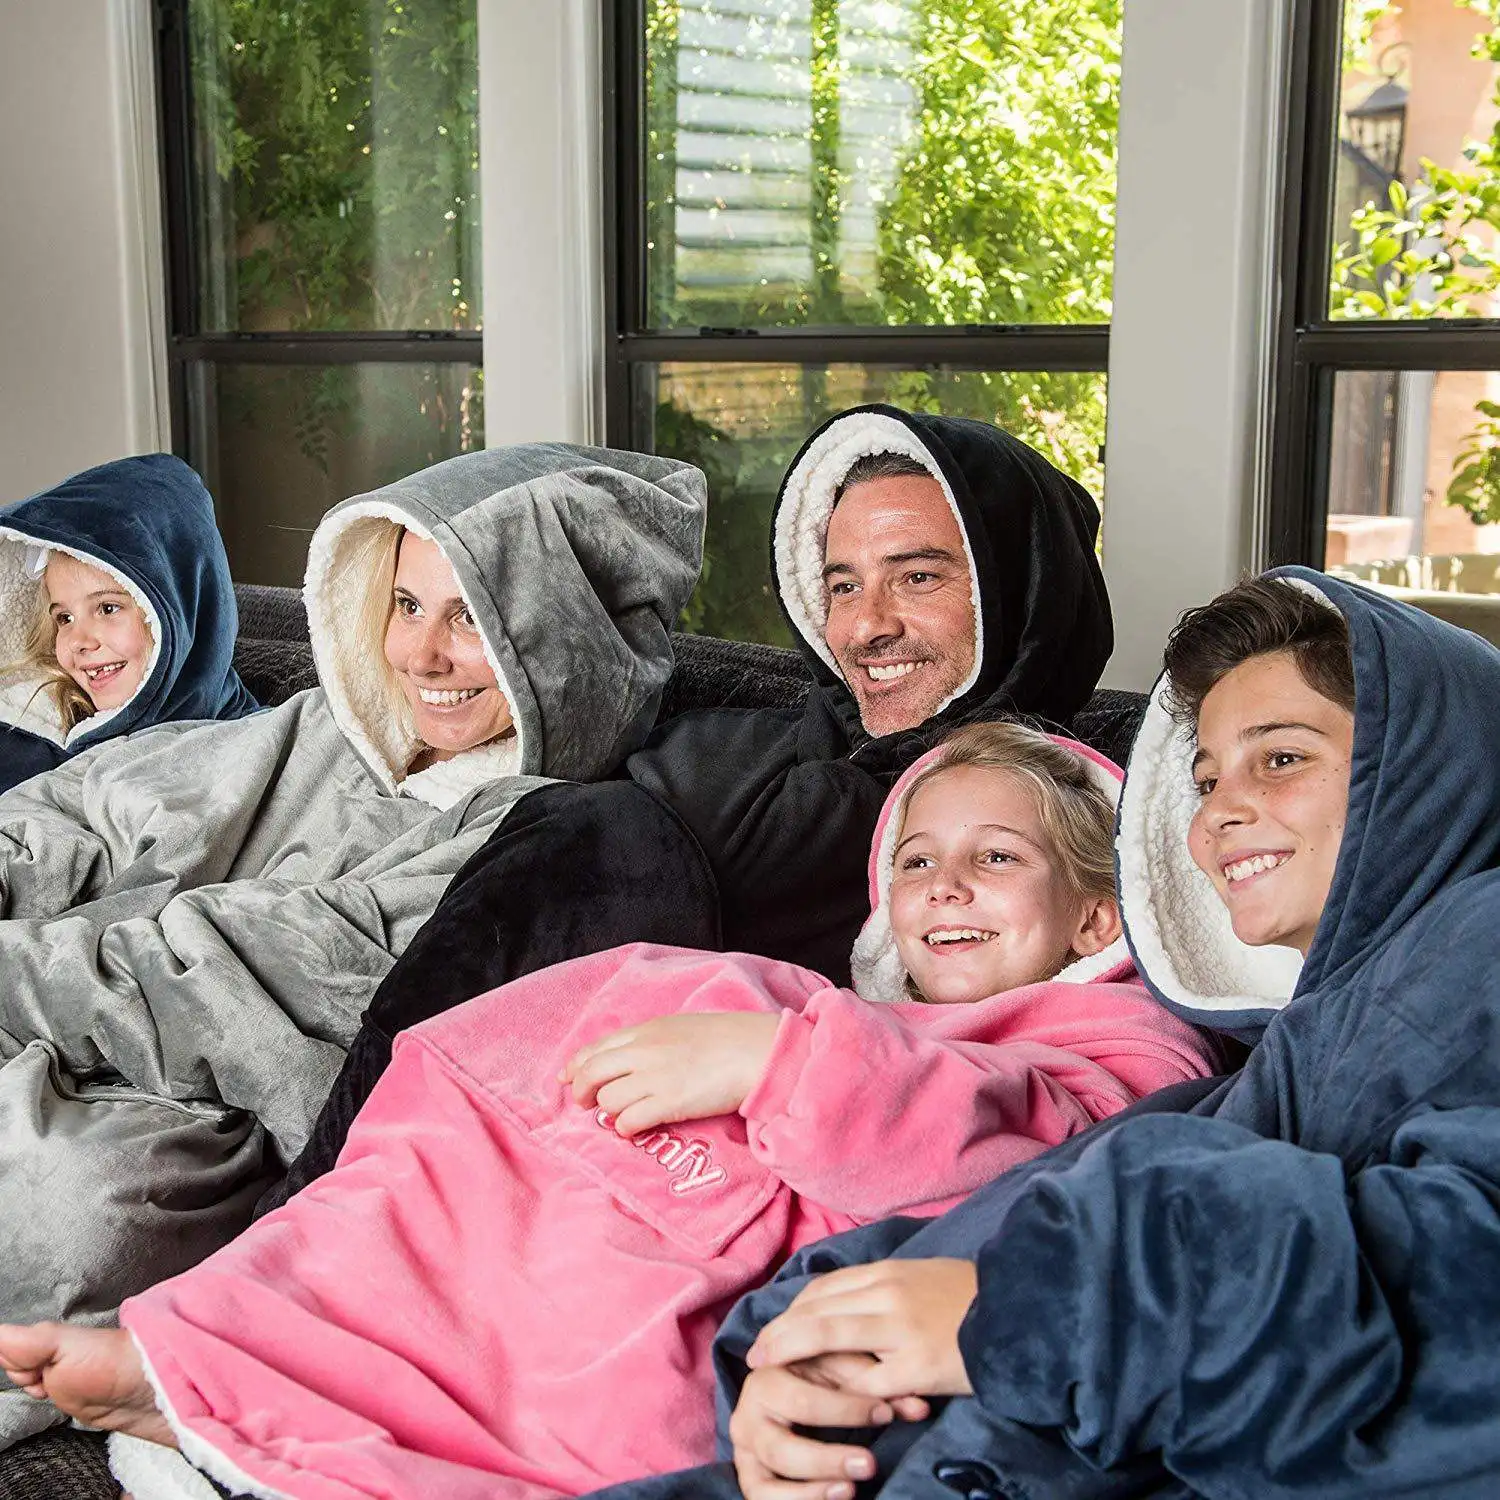 Зимнее плотное удобное одеяло, толстовка, однотонное теплое одеяло с капюшоном для взрослых и детей, флисовое утяжеленное одеяло для путешествий